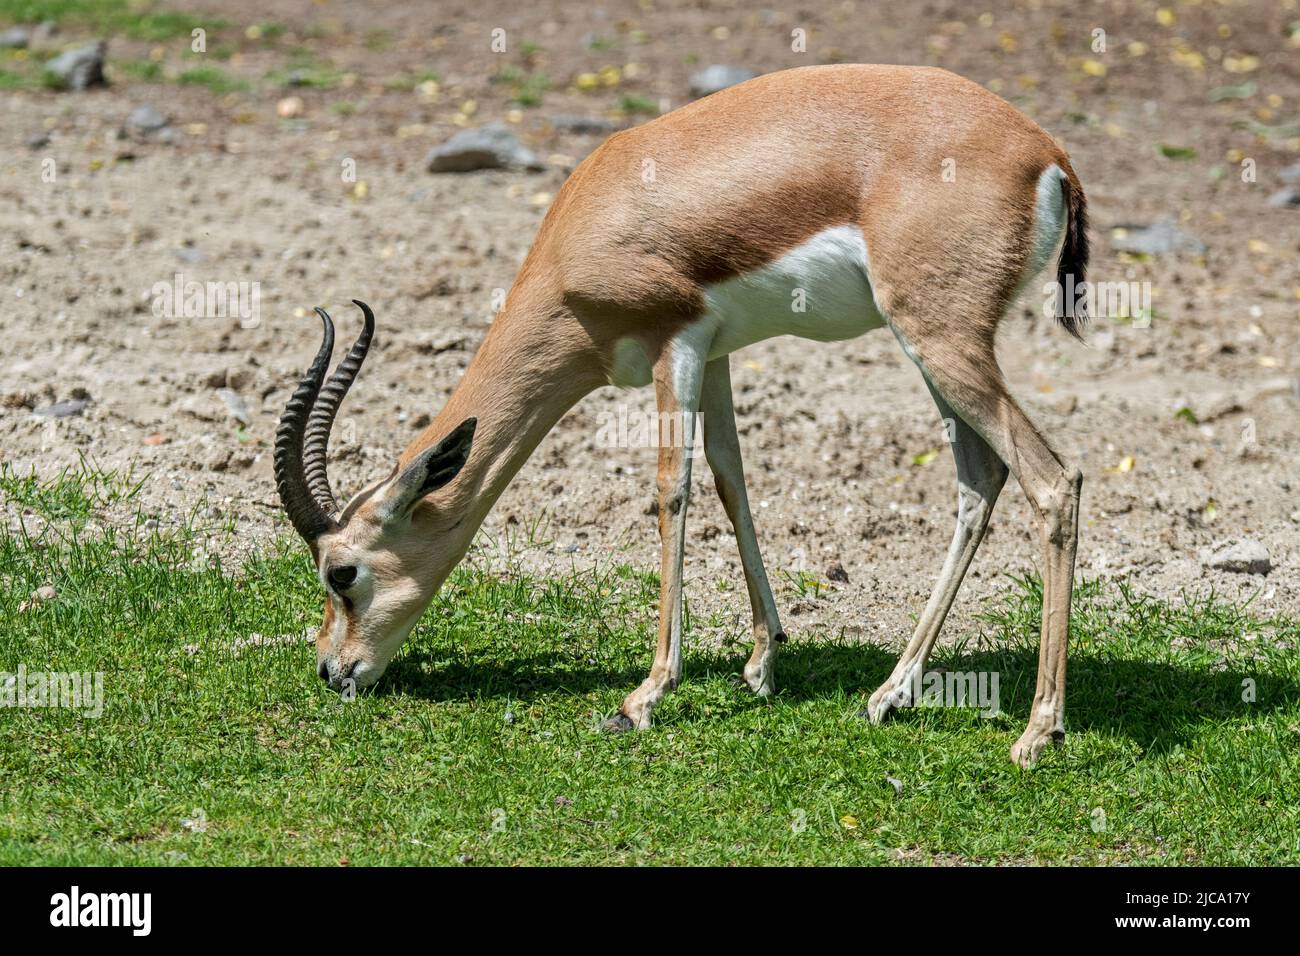 Dorcas gazelle / ariel gazelle (Gazella dorcas / Capra dorcas) grazing grass, native to semidesert climates of Africa and Arabia Stock Photo